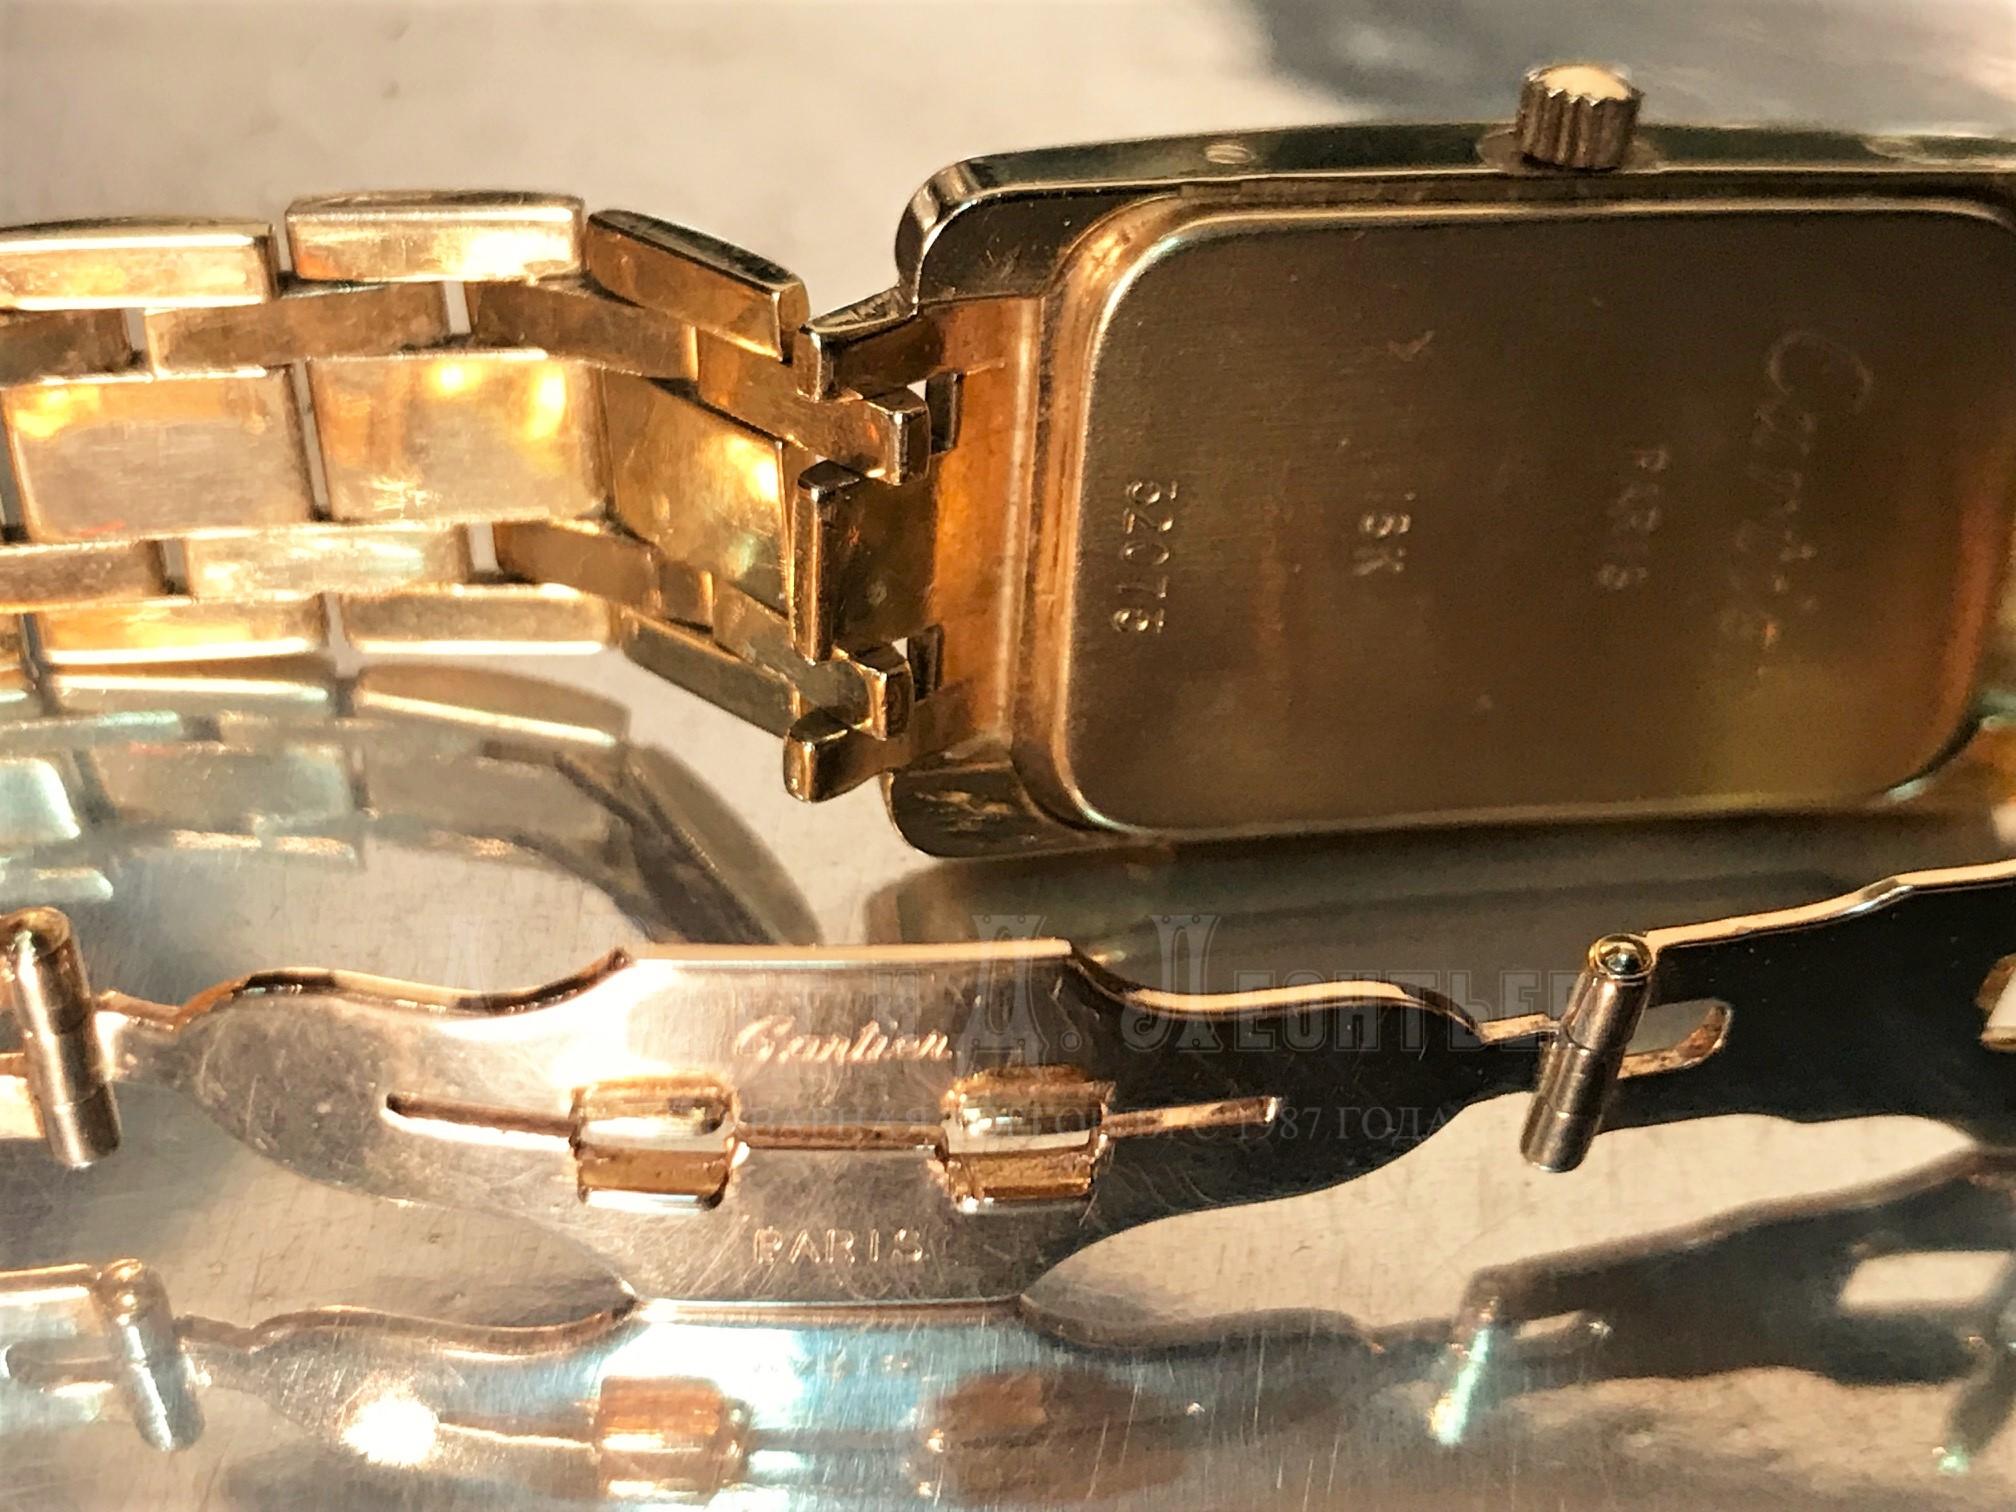 Наручные золотые часы Картье 750 проба 18 карат с бриллиантами Cartier на золотом браслете